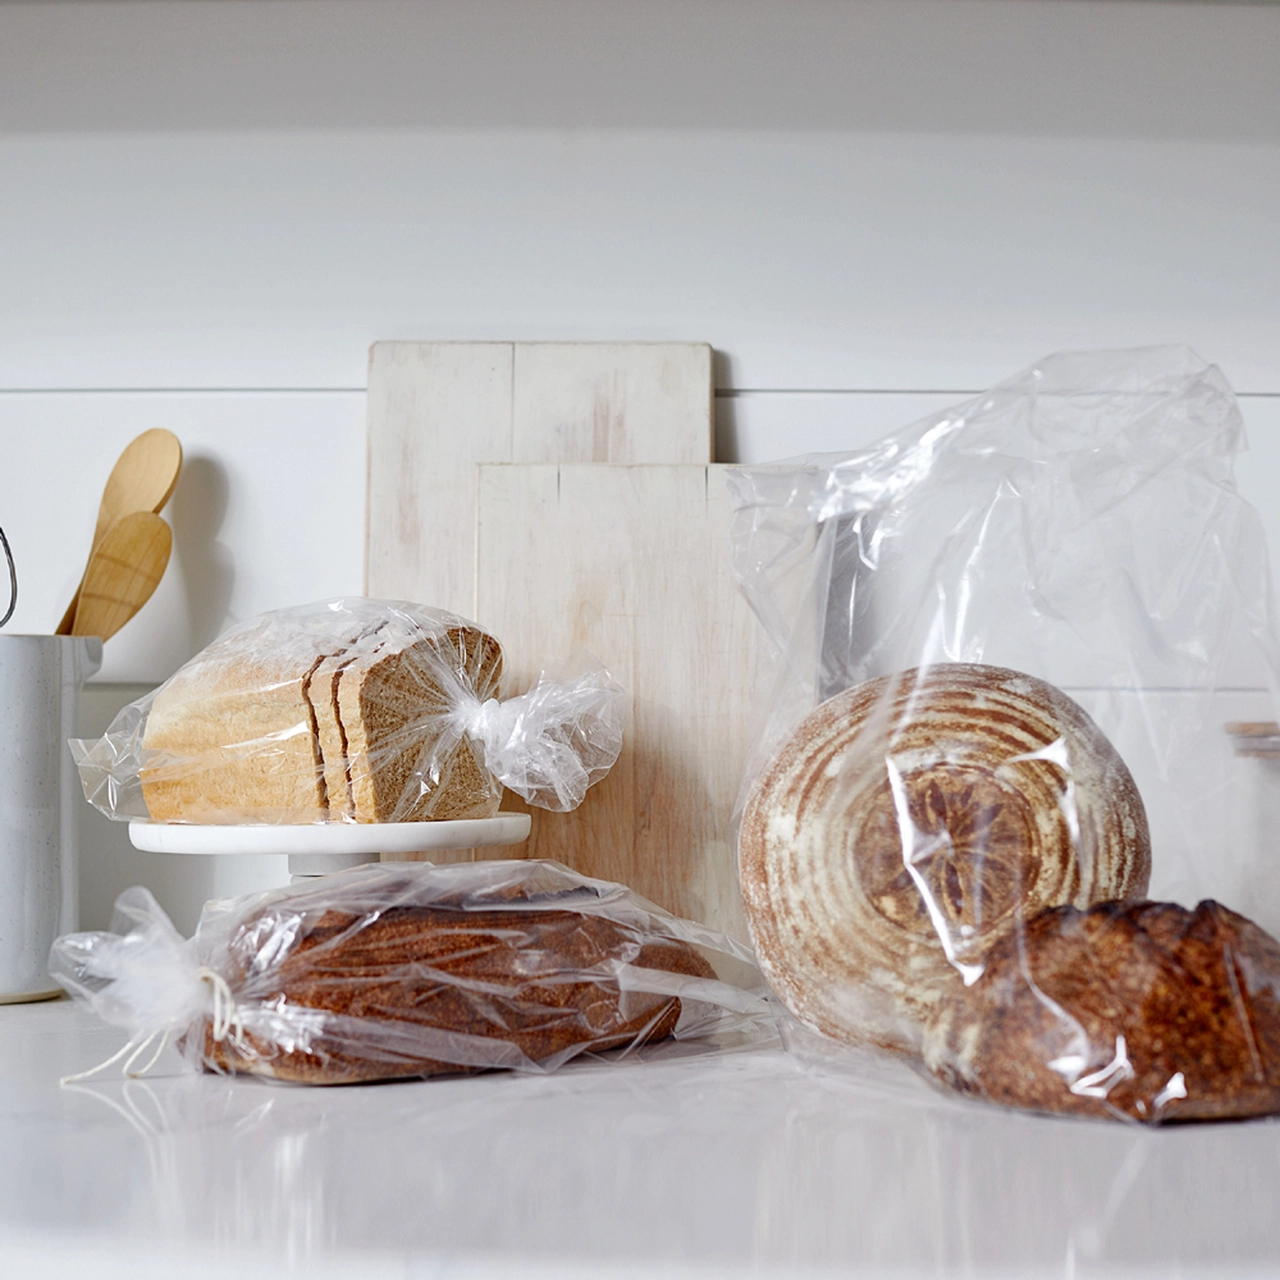 congeler du pain dans des sacs en plastique methode simple sans risques pour la santé